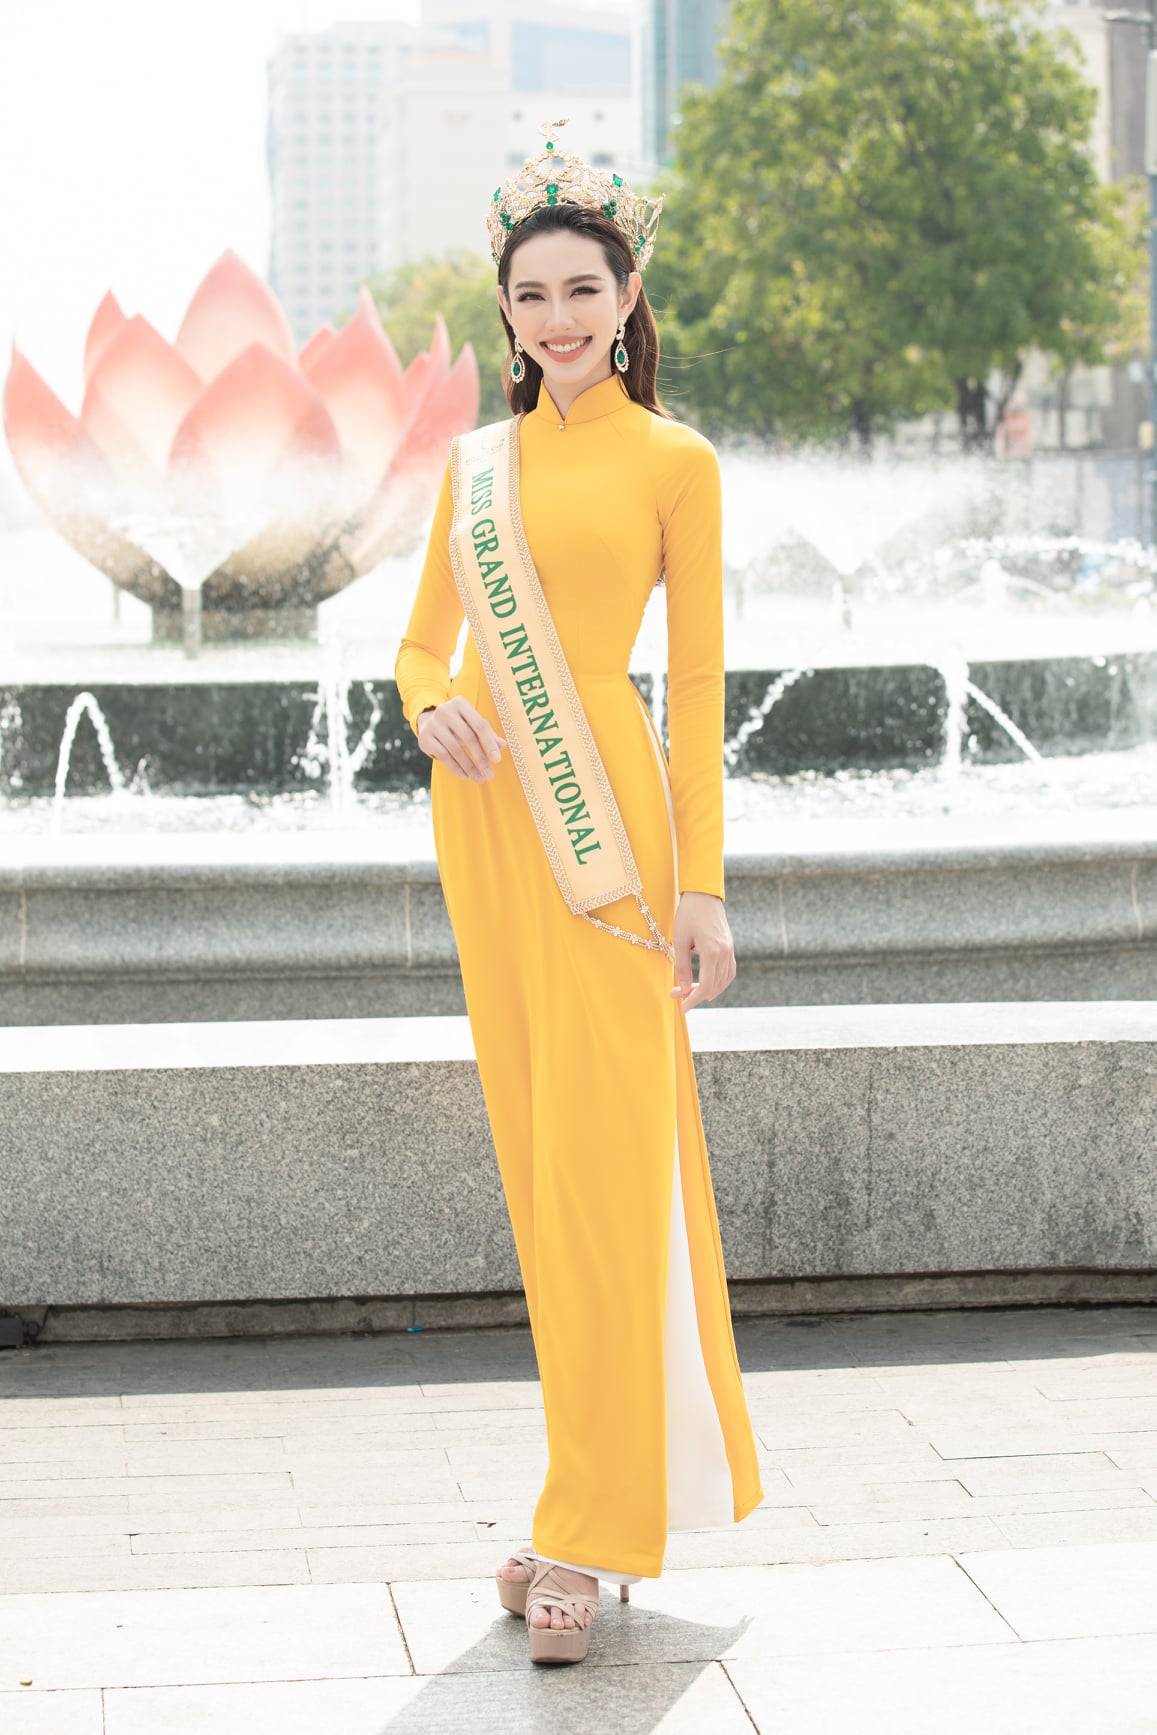 Không cần 'hở bạo' Hoa hậu Thùy Tiên vẫn cuốn hút nhờ thần thái 'sang chảnh' ngút ngàn, bộ trang phục được CĐM khen 'nức nở' - Ảnh 6